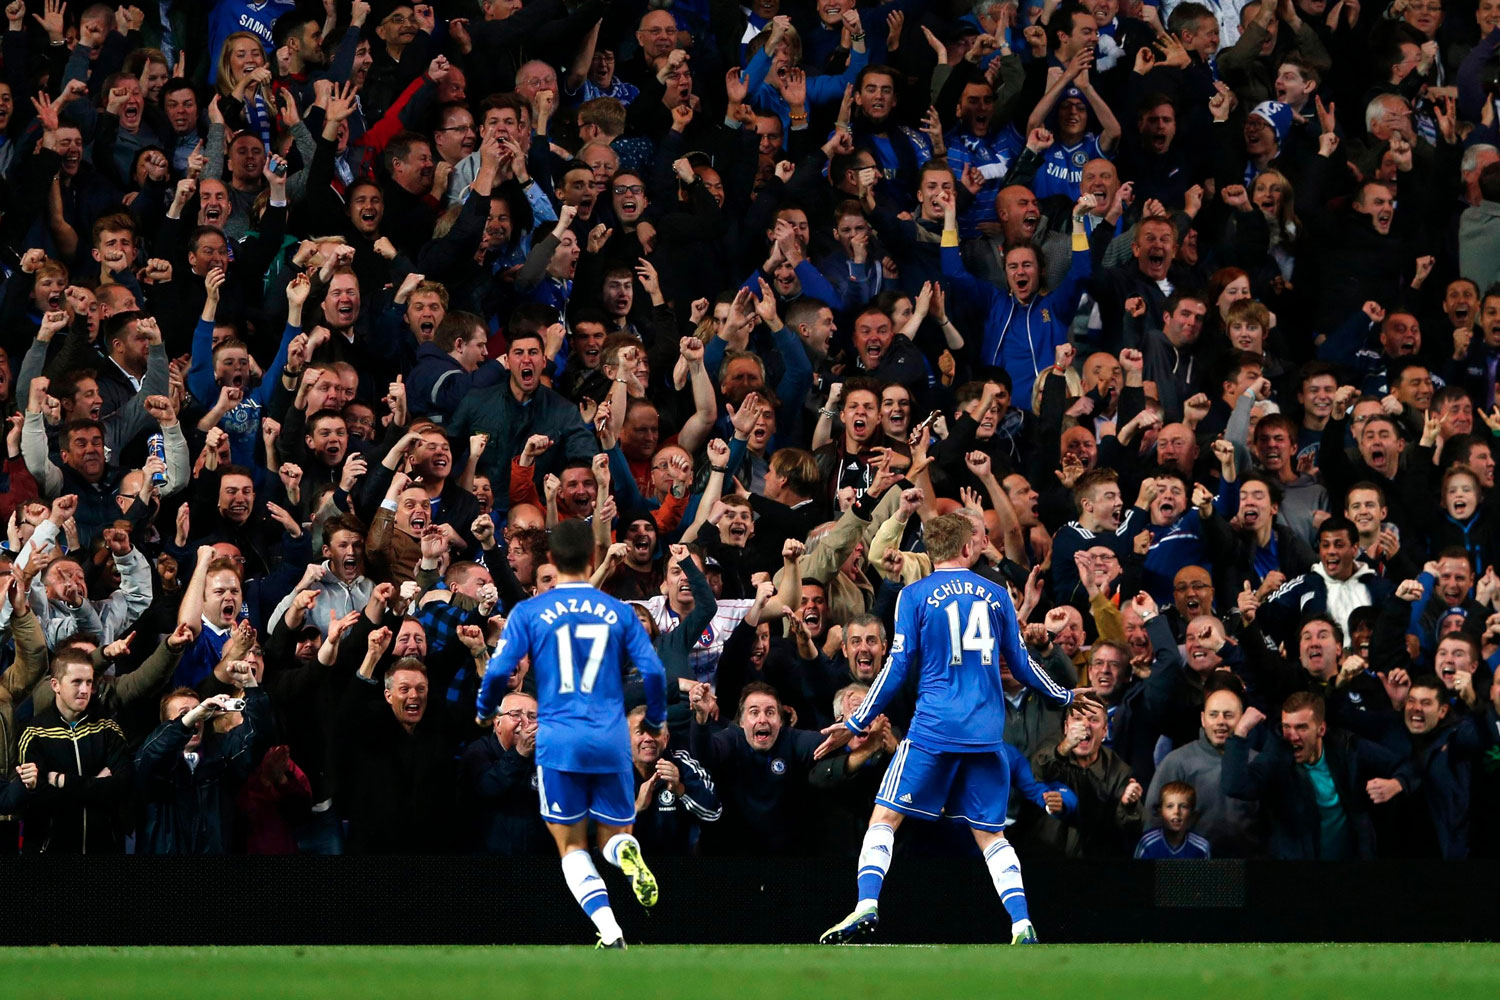 El Chelsea gana al Manchester City por 2-1 y se coloca a dos puntos del Arsenal, que sigue líder